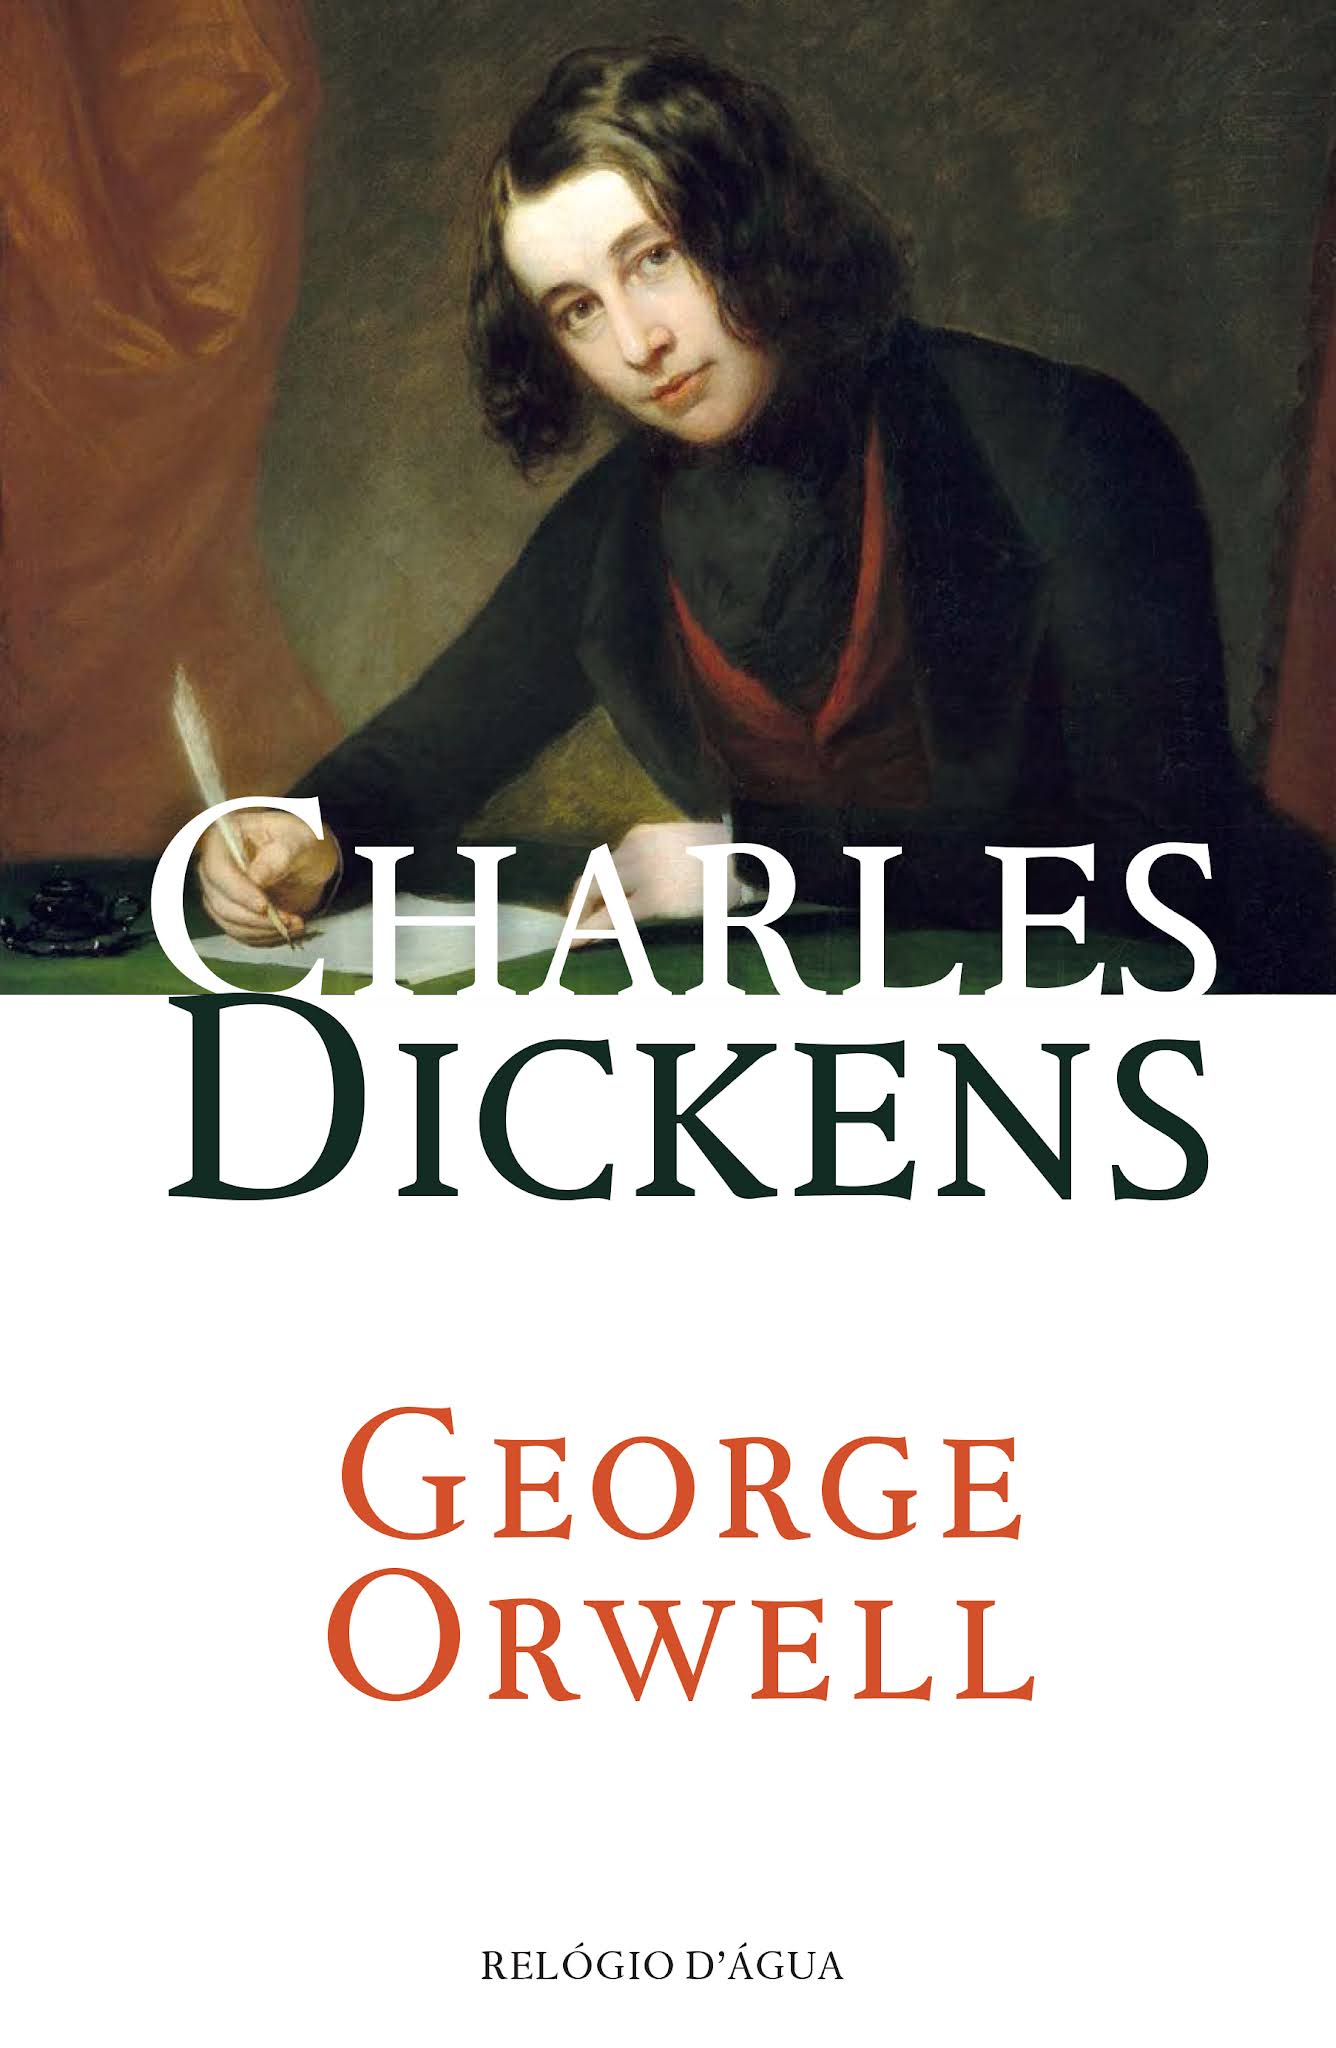 george orwell essay on dickens